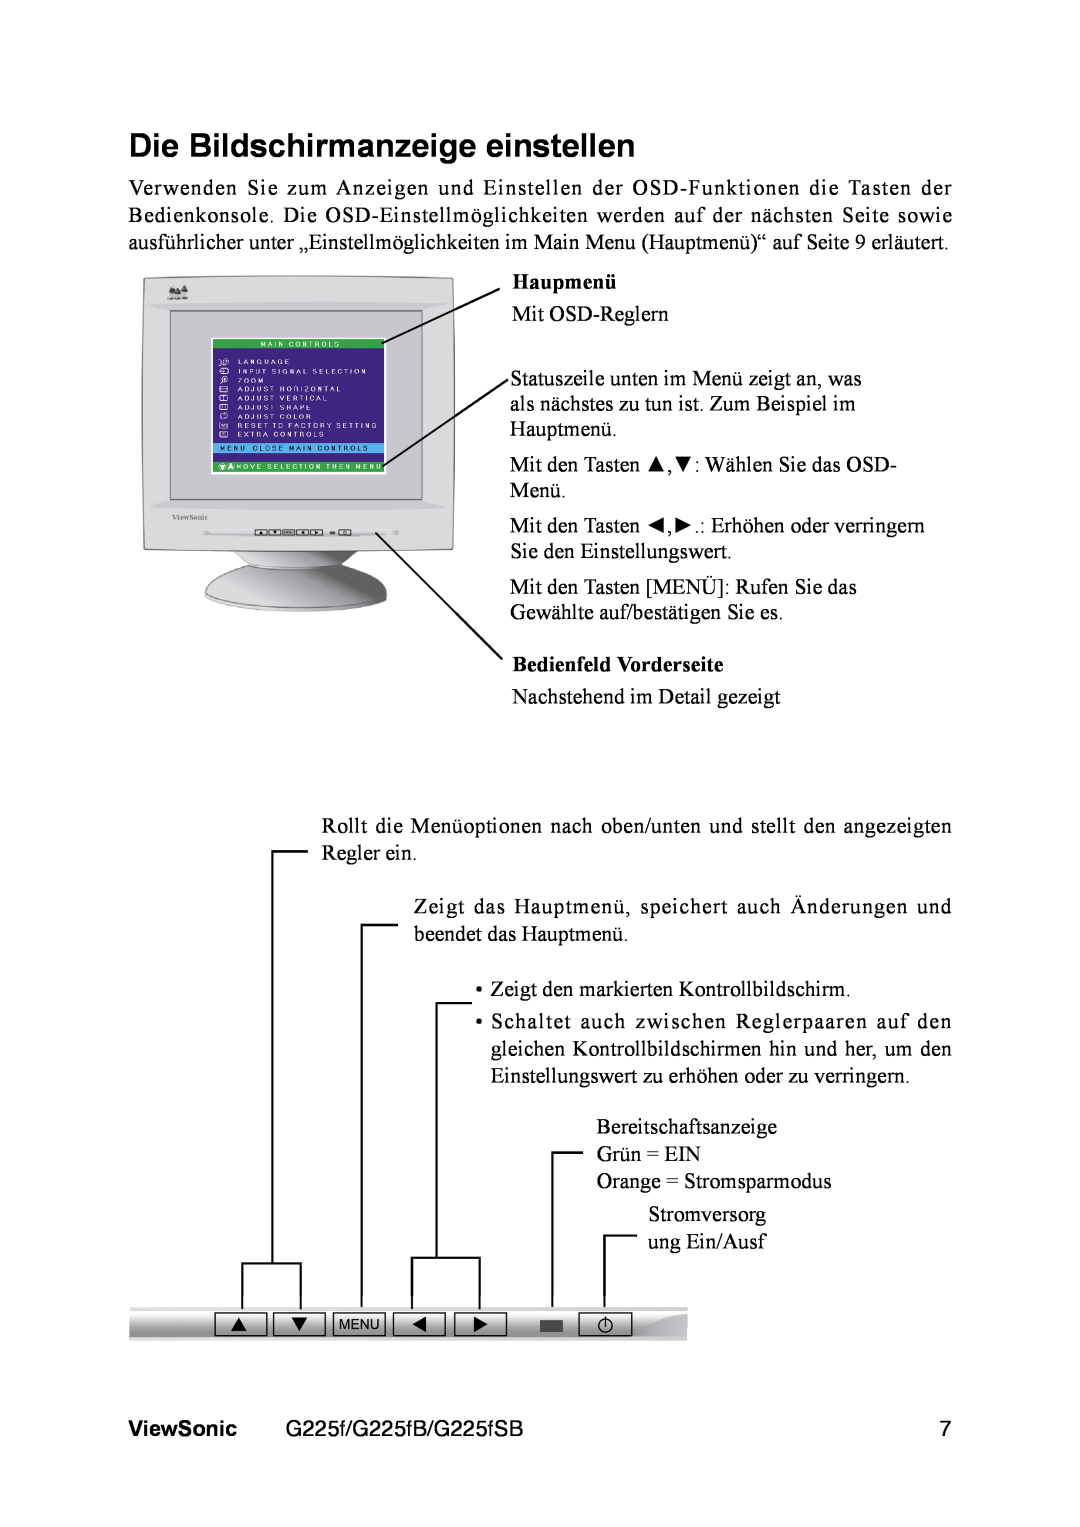 ViewSonic VS111135 manual Die Bildschirmanzeige einstellen, Haupmenü, Bedienfeld Vorderseite, ViewSonic 